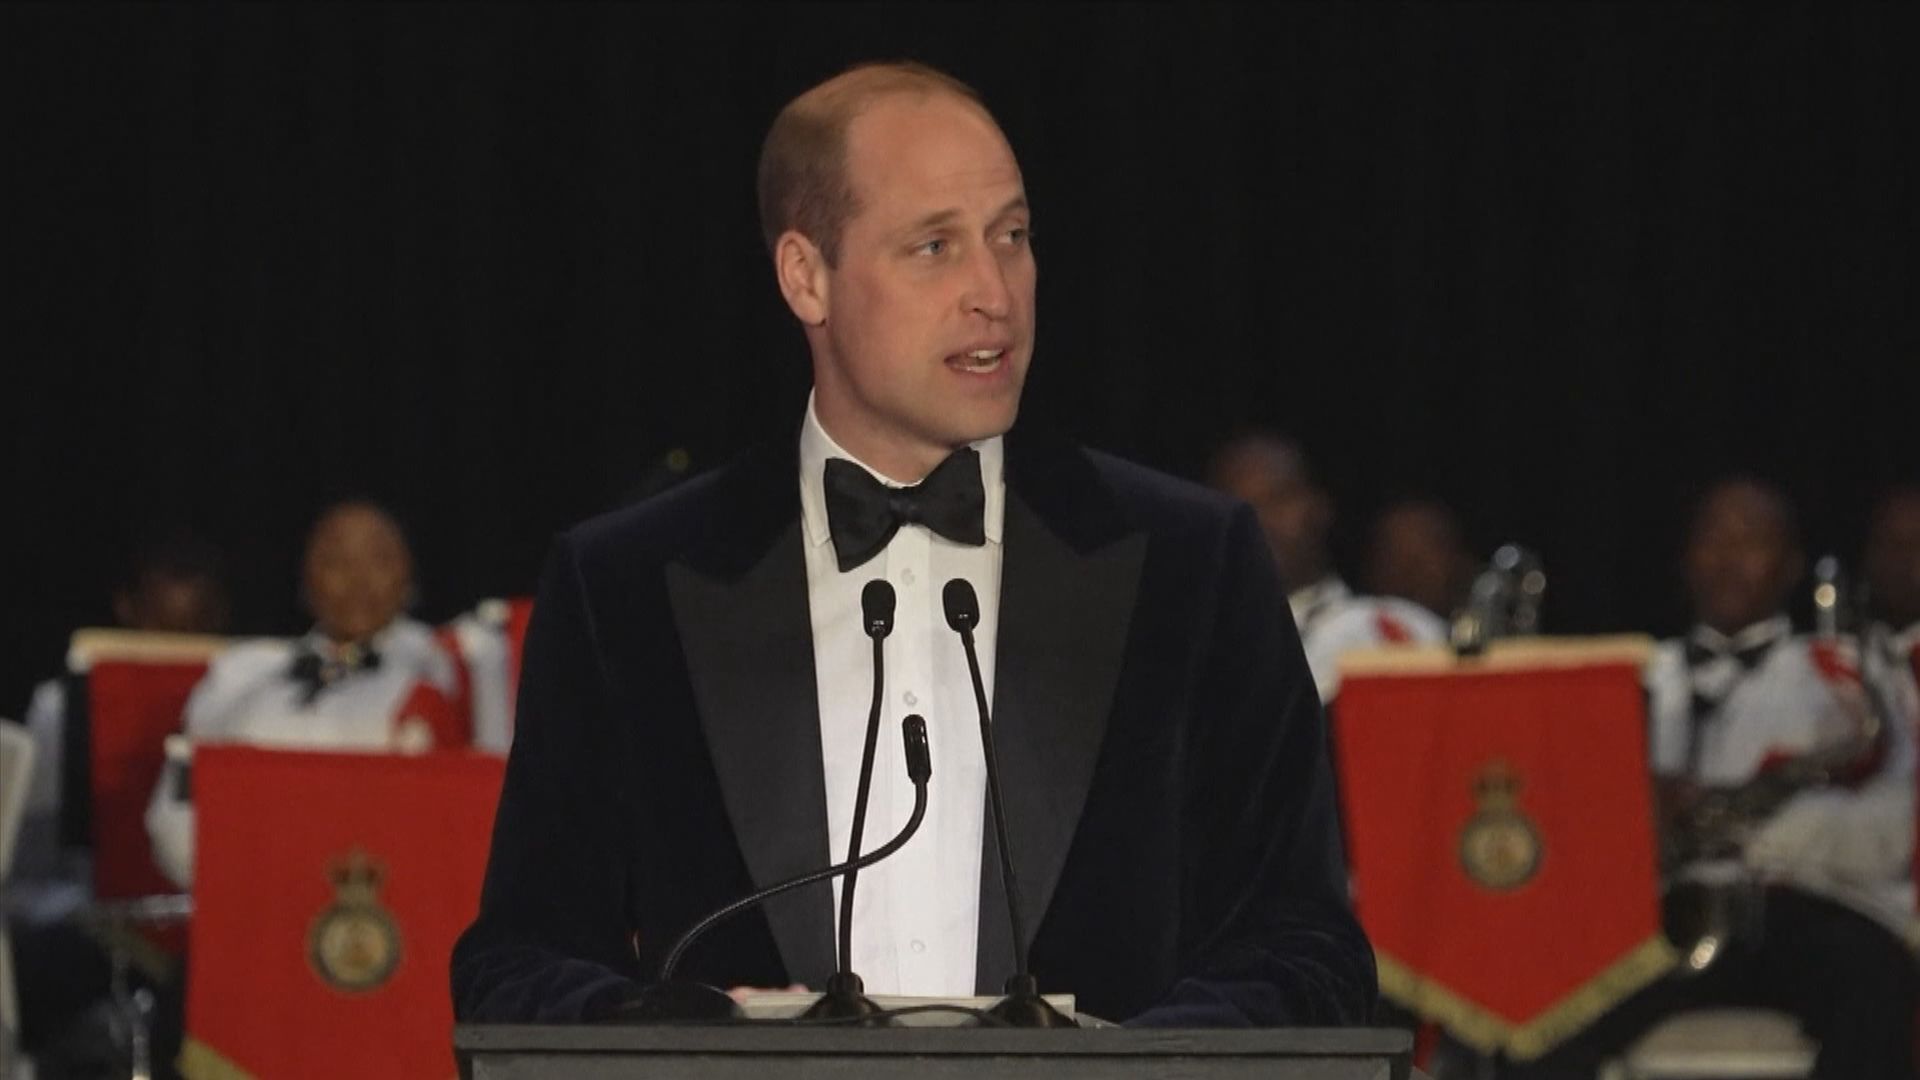 威廉王子對加勒比國家放棄承認英女王為國家元首表達支持